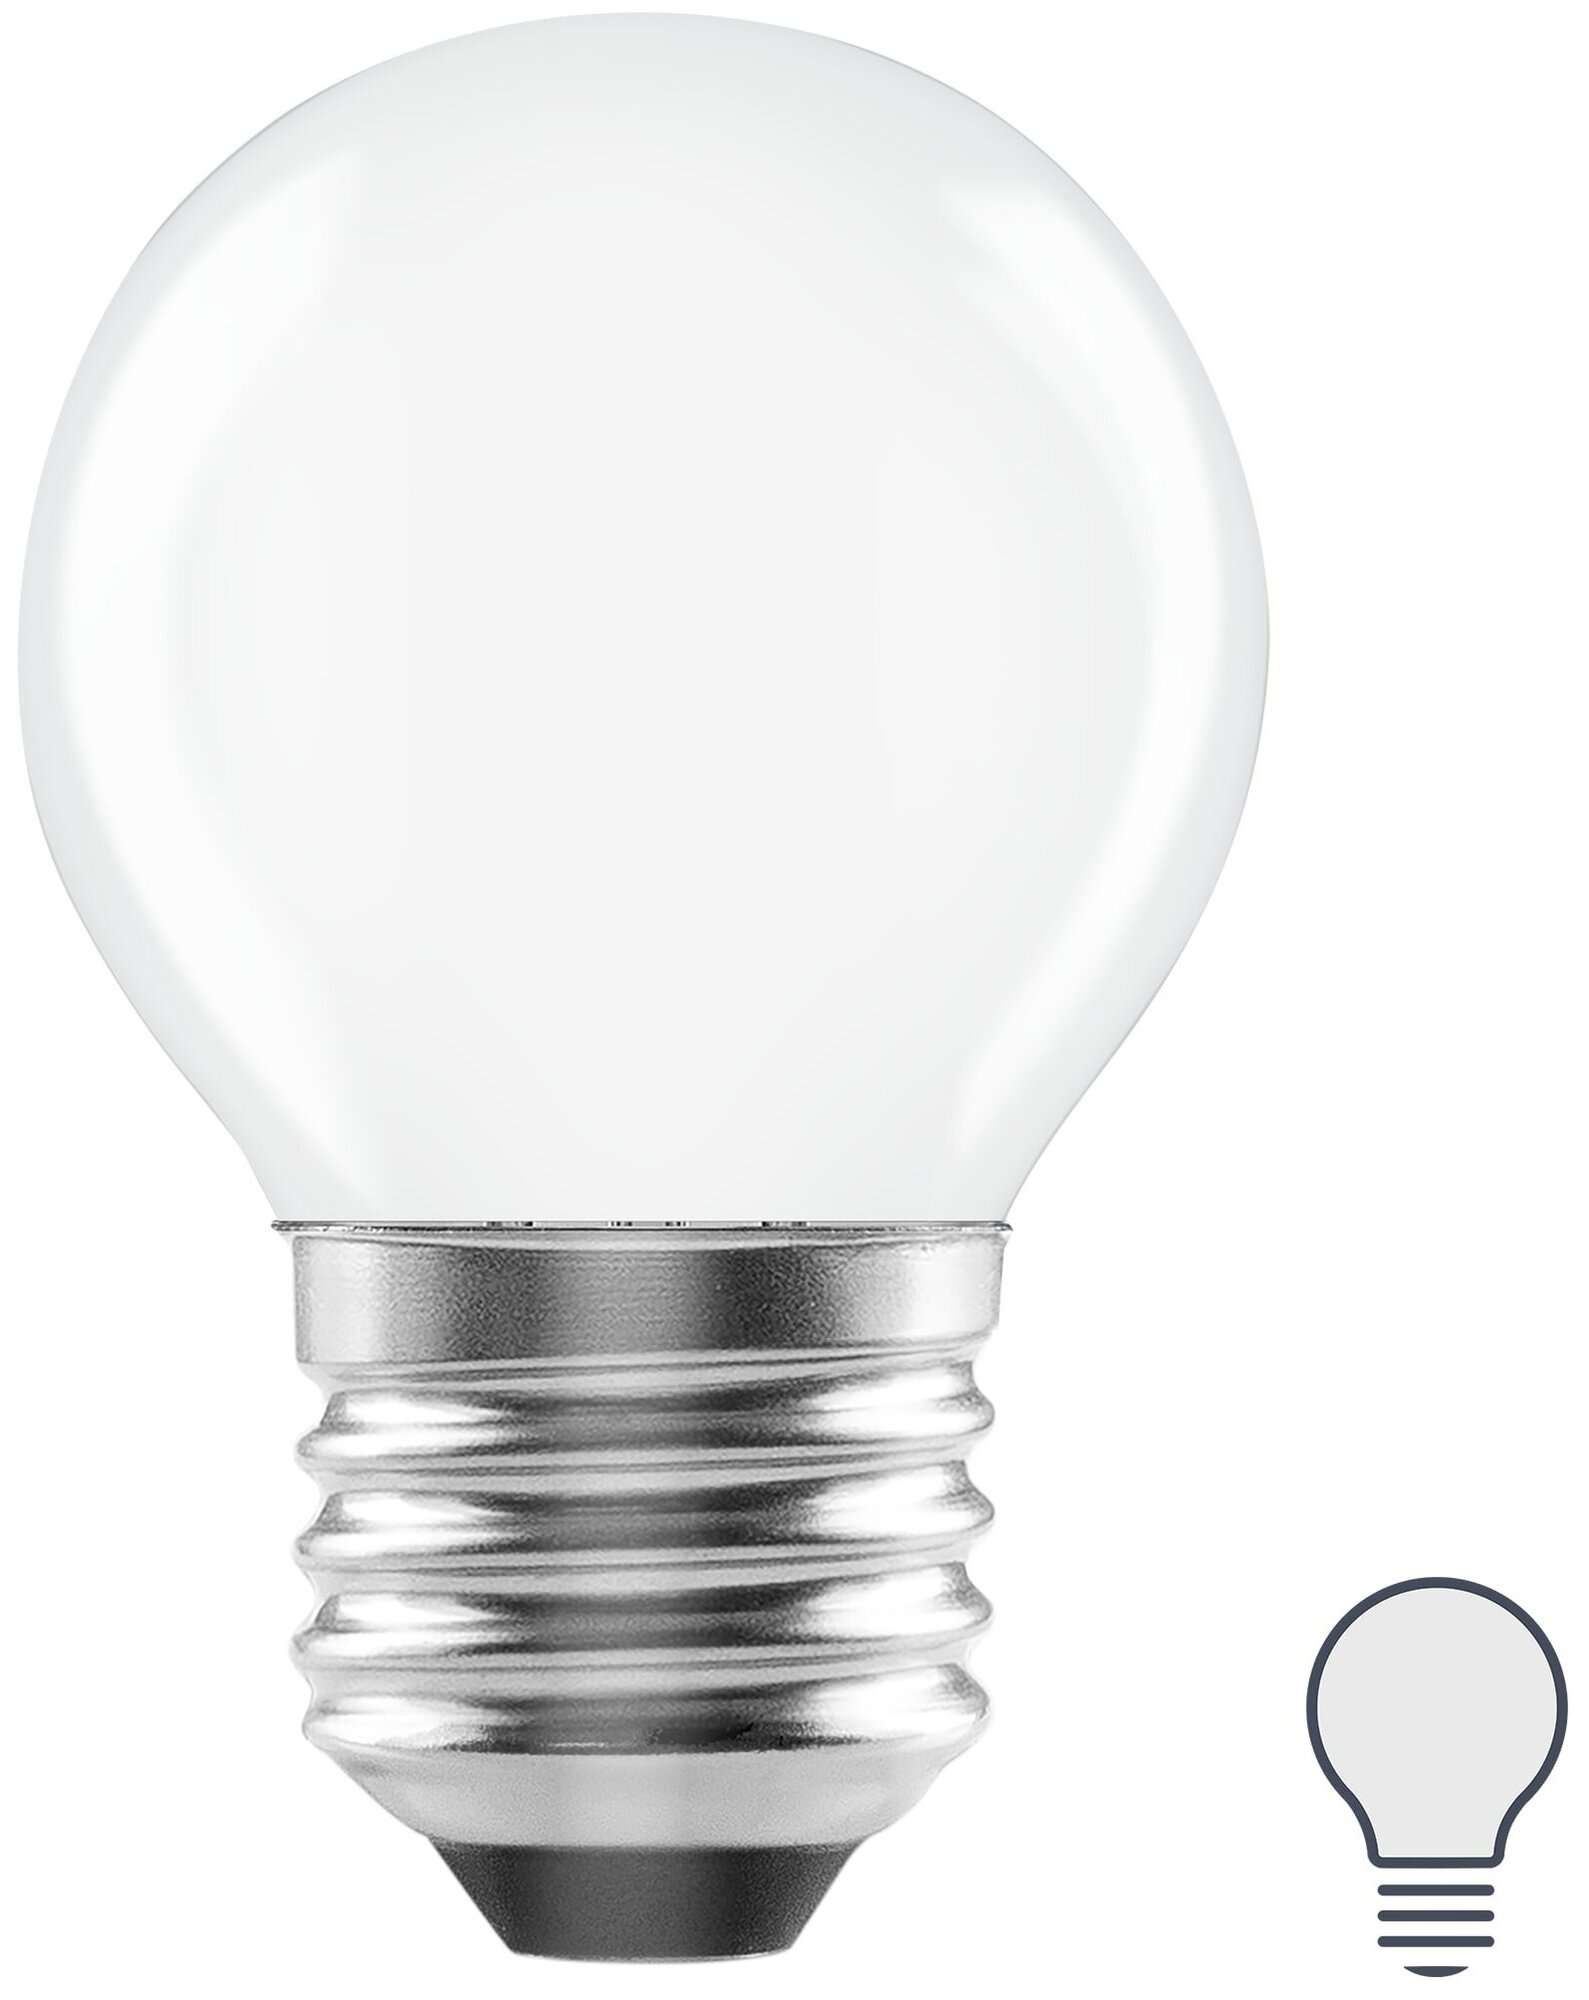 Лампа светодиодная Lexman E27 220-240 В 5 Вт шар матовая 600 лм нейтральный белый свет. Набор из 2 шт.